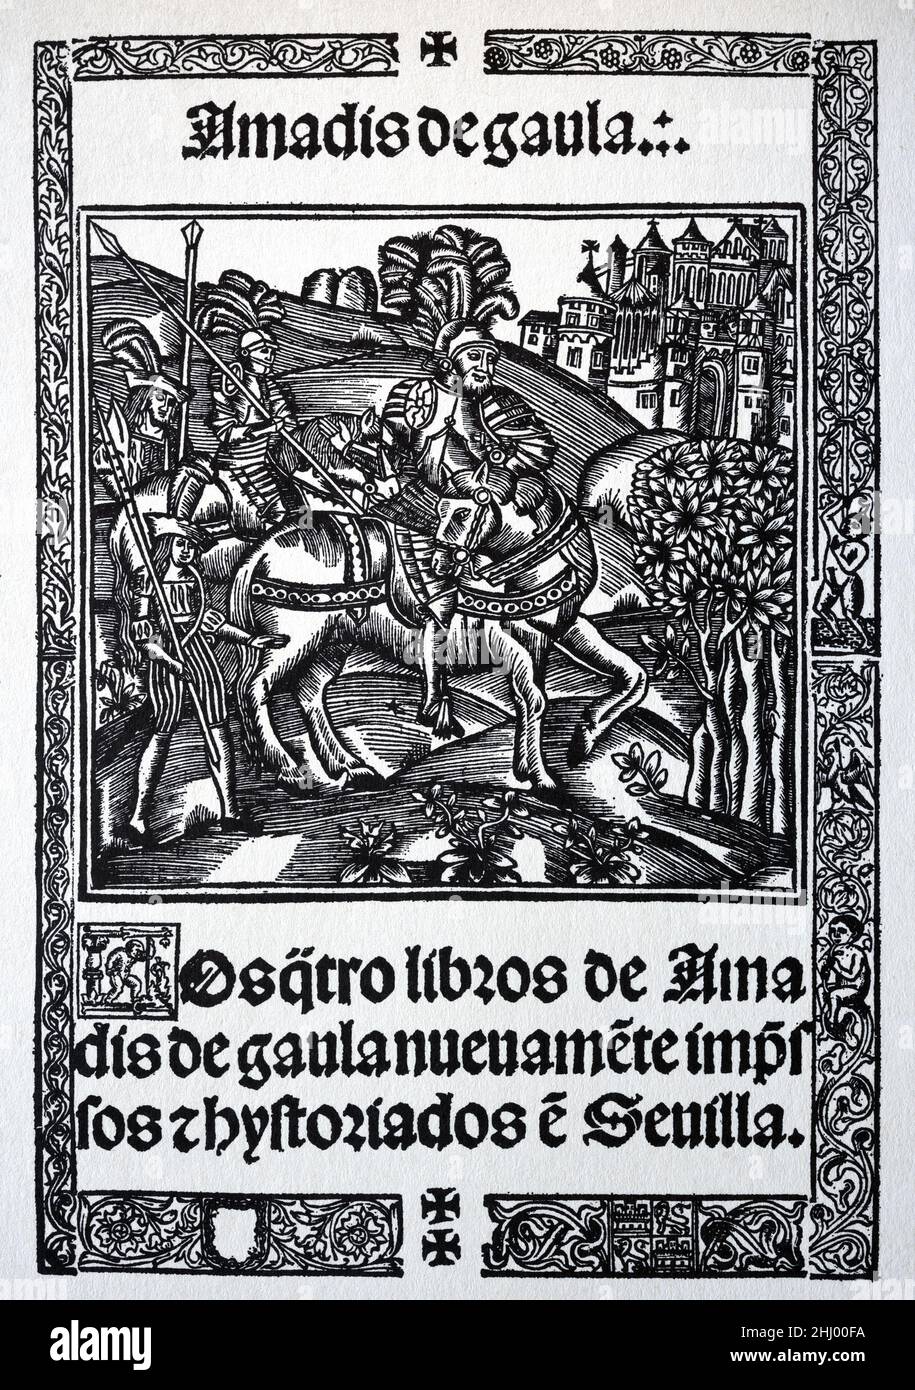 Copertina del libro di un'edizione spagnola del 1533 di Amadis de Gaula o Amadis di Gallia, un Romance cavalleresco di Garci Rodriguez de Montalvo. Stampa vintage Woodcut, incisione o illustrazione 1533. Foto Stock